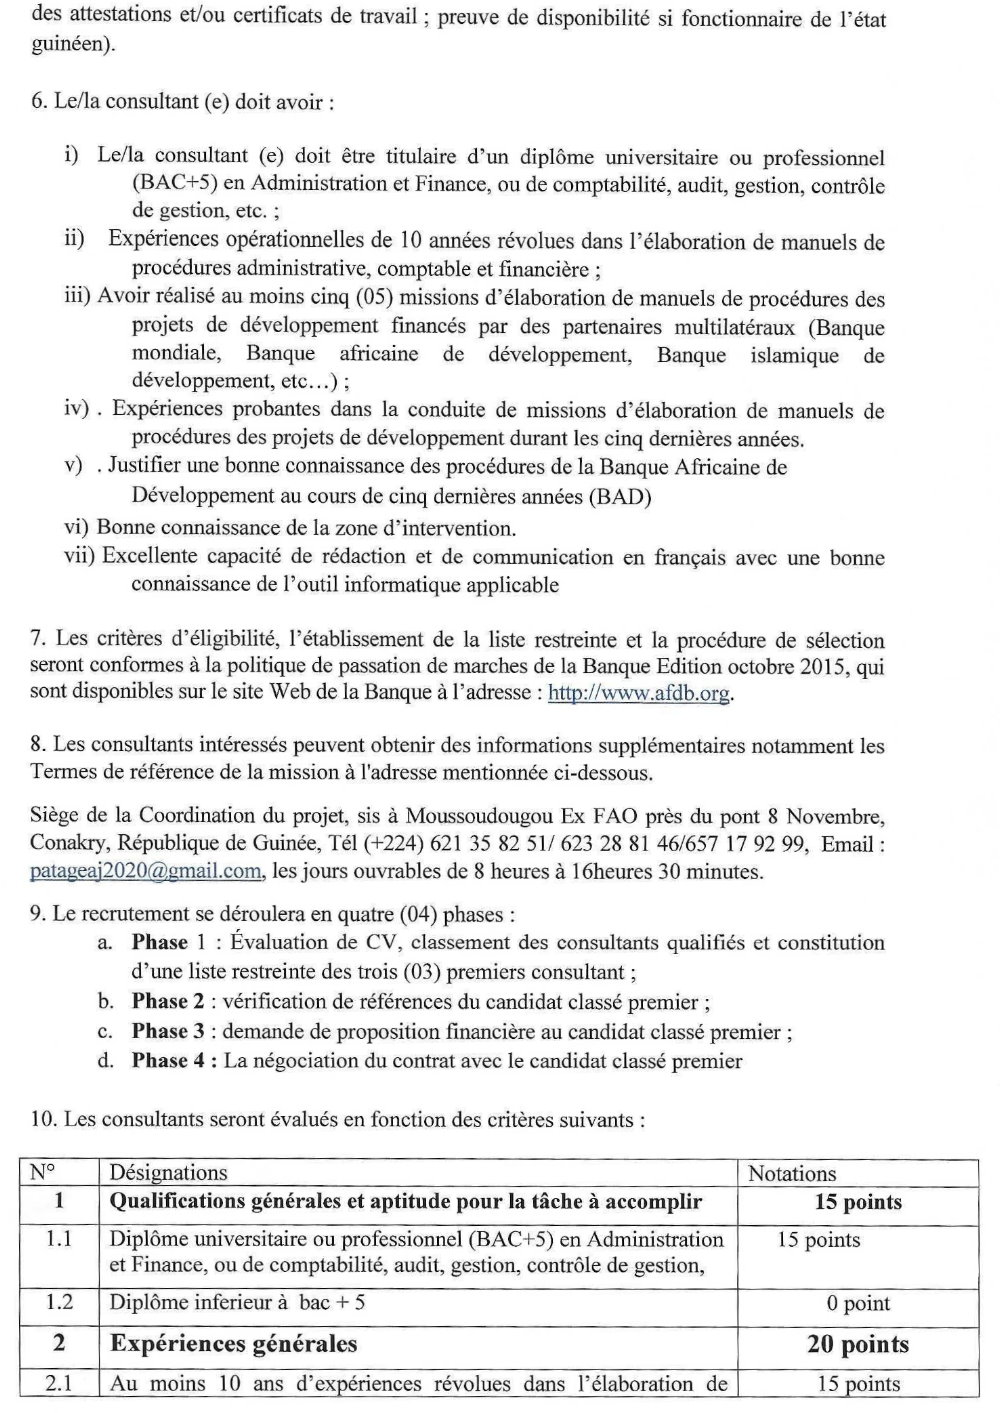 Elaboration du Manuel de Procédure Administrative Financière et Comptable - BAD p2